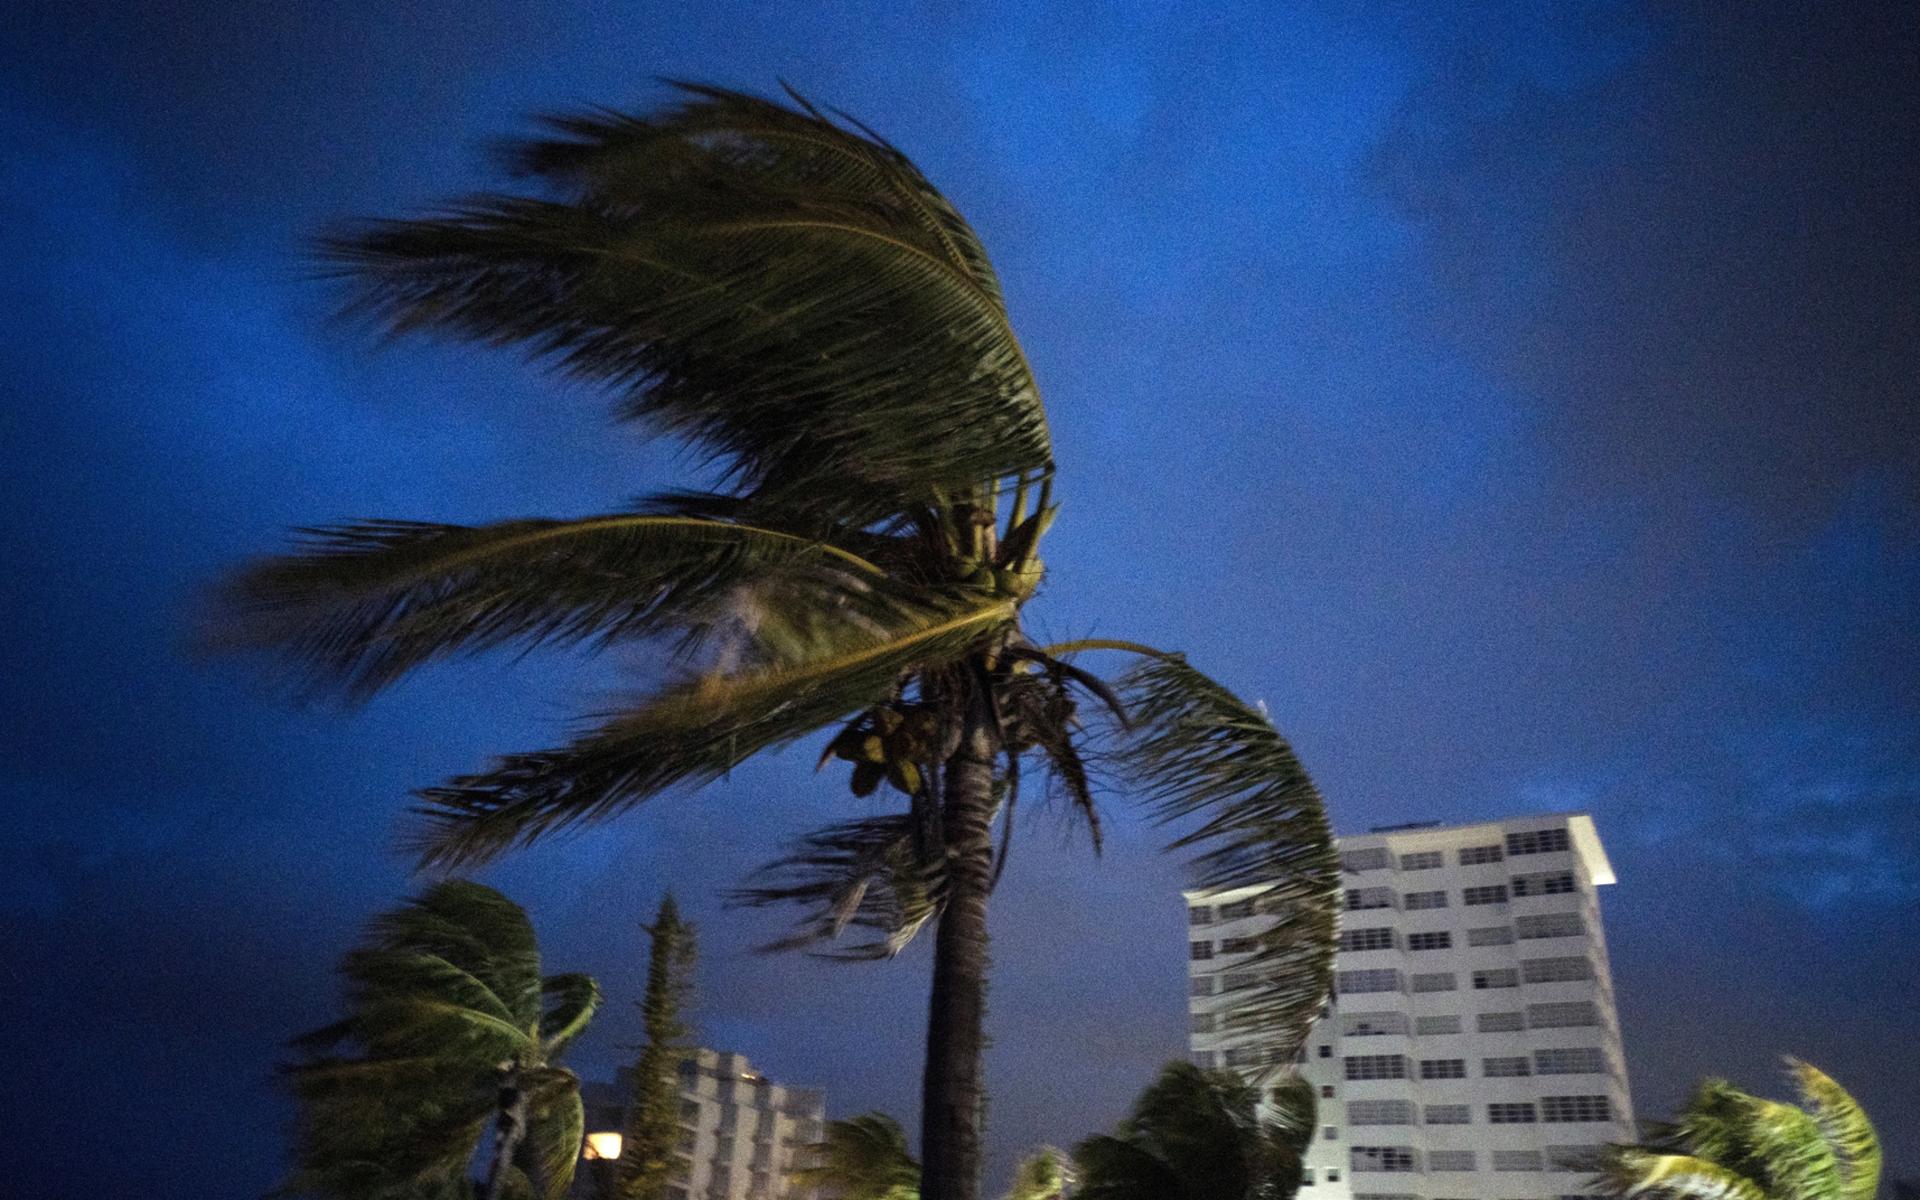 Starka vinadar ruskar palmerna när orkanen Dorian är på väg att dra in över Freeport, Grand Bahama.